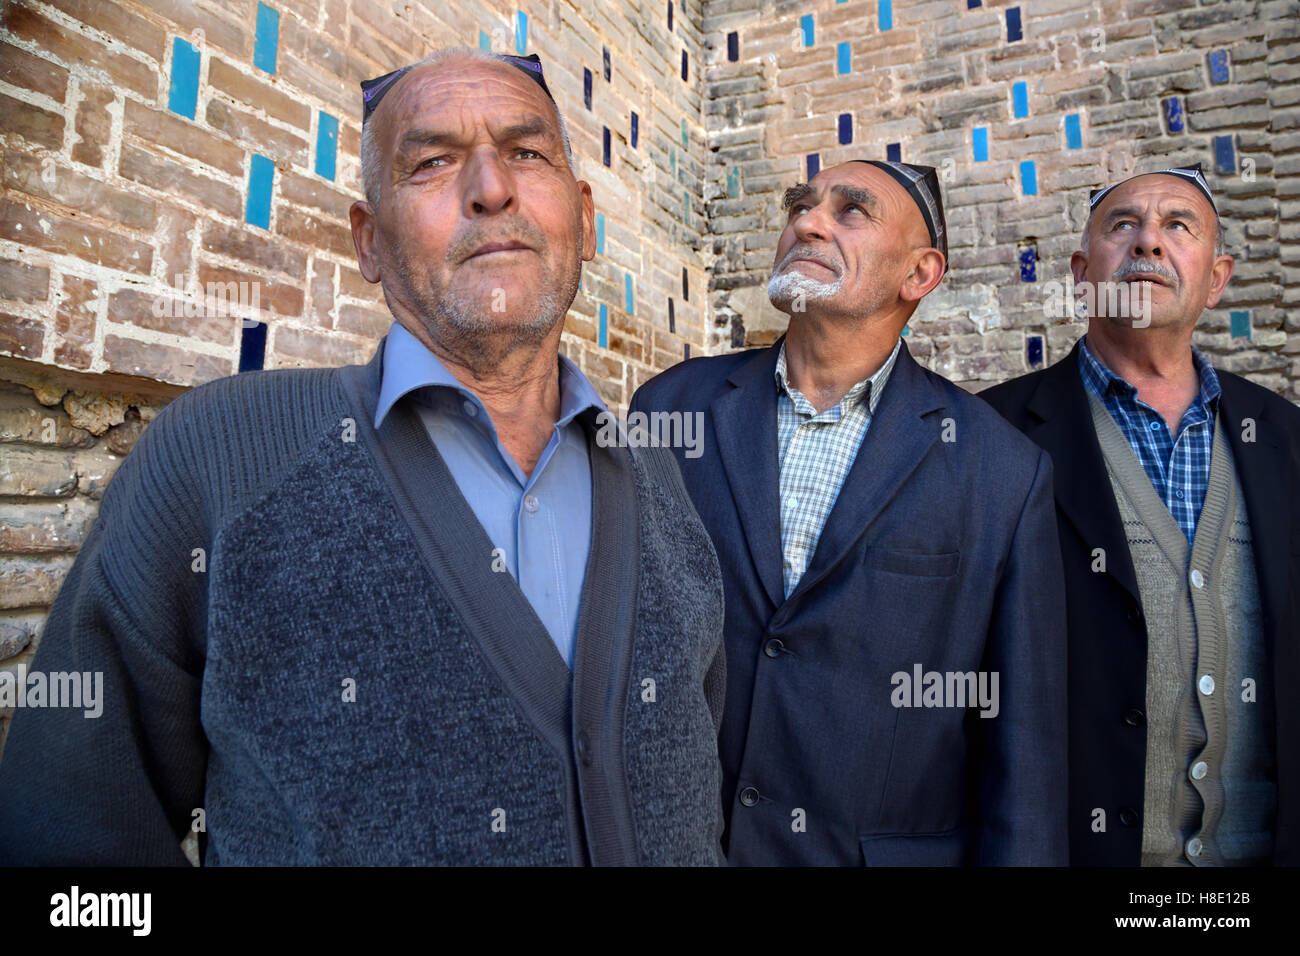 Uzbekistan  - portrait of Uzbek men in Registan, Samarkand Stock Photo